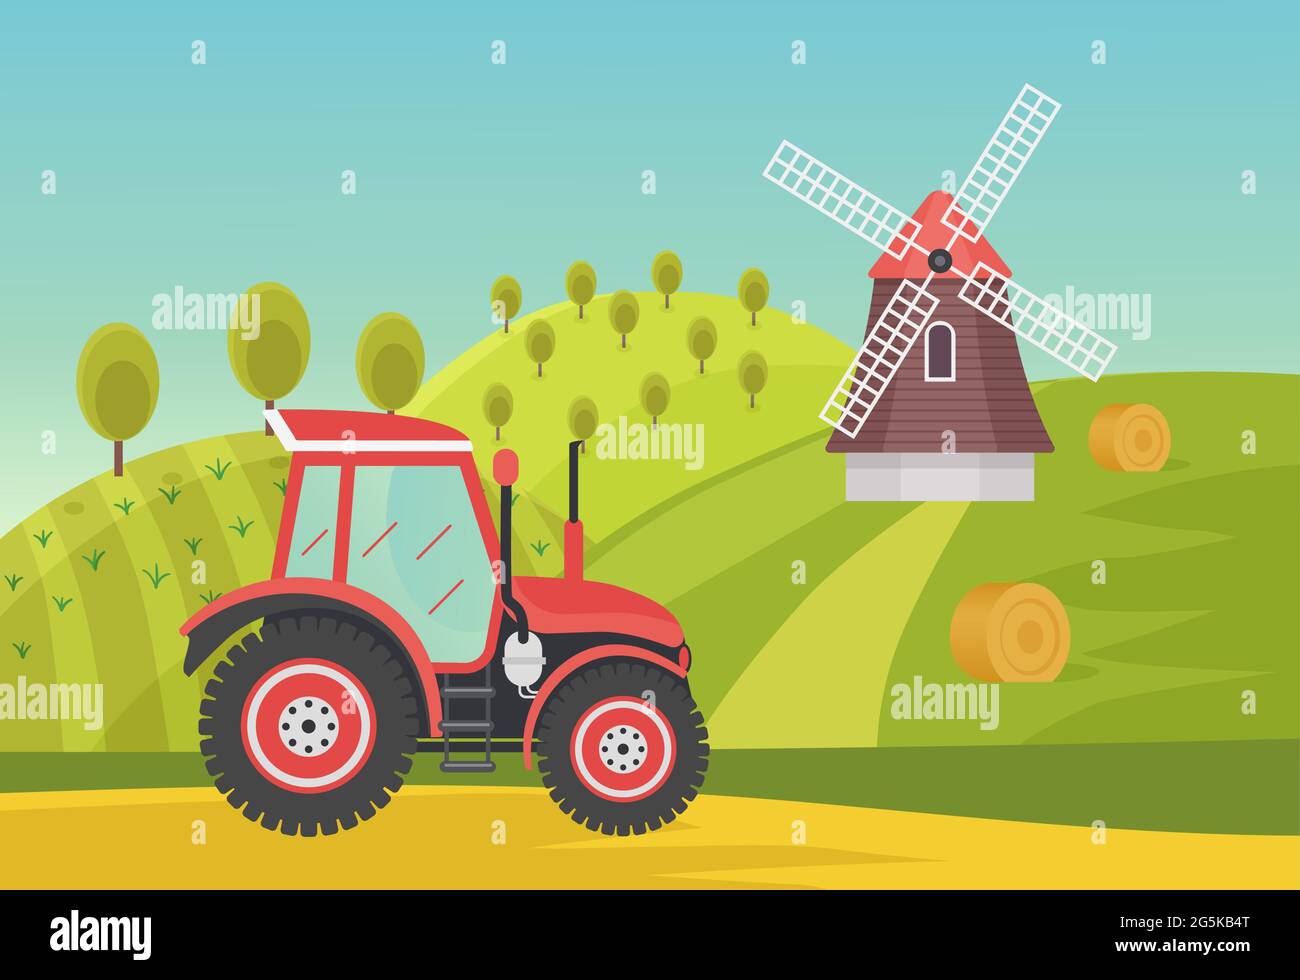 Ranch landwirtschaftlichen Sommer grünen Feldern mit modernen Bauernhof Traktor, agronomischer Vektor-Illustration. Cartoon Landwirtschaft Traktor Maschine arbeitet in ländlichen Dorf Landschaft, Windmühle auf Hügel Hintergrund Stock Vektor